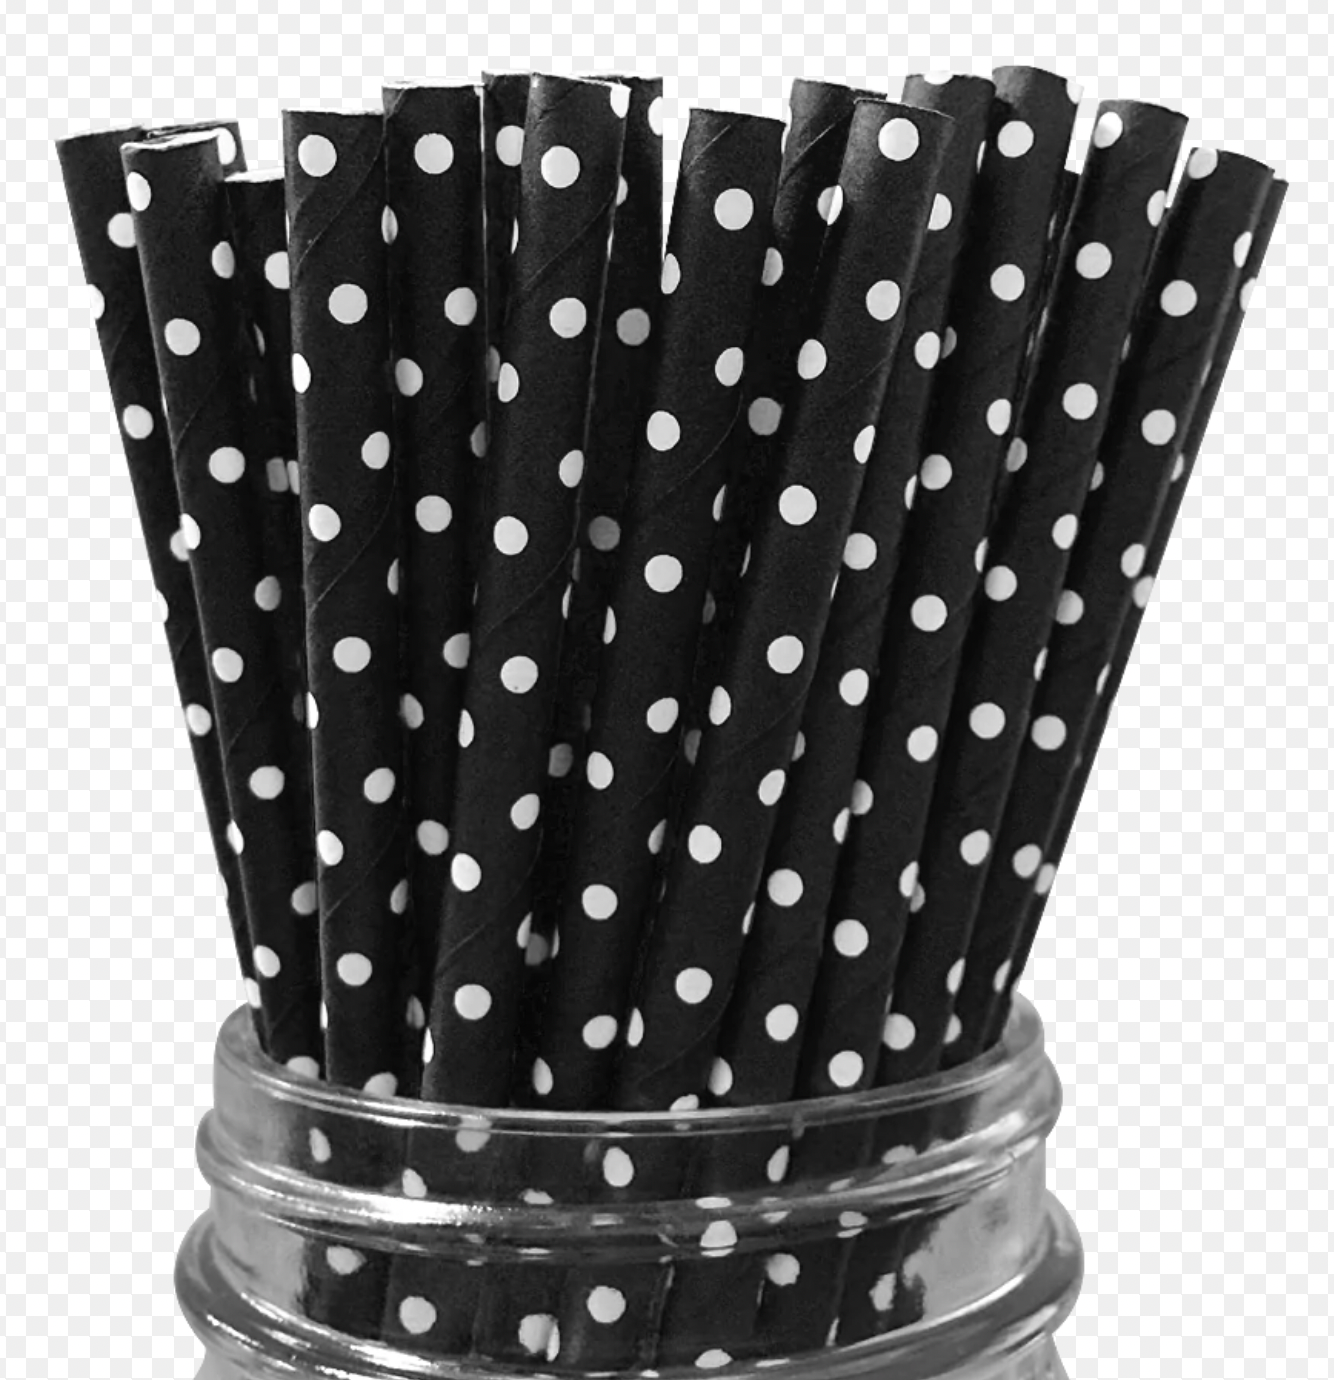 Black and White Polka Dot Paper Straws